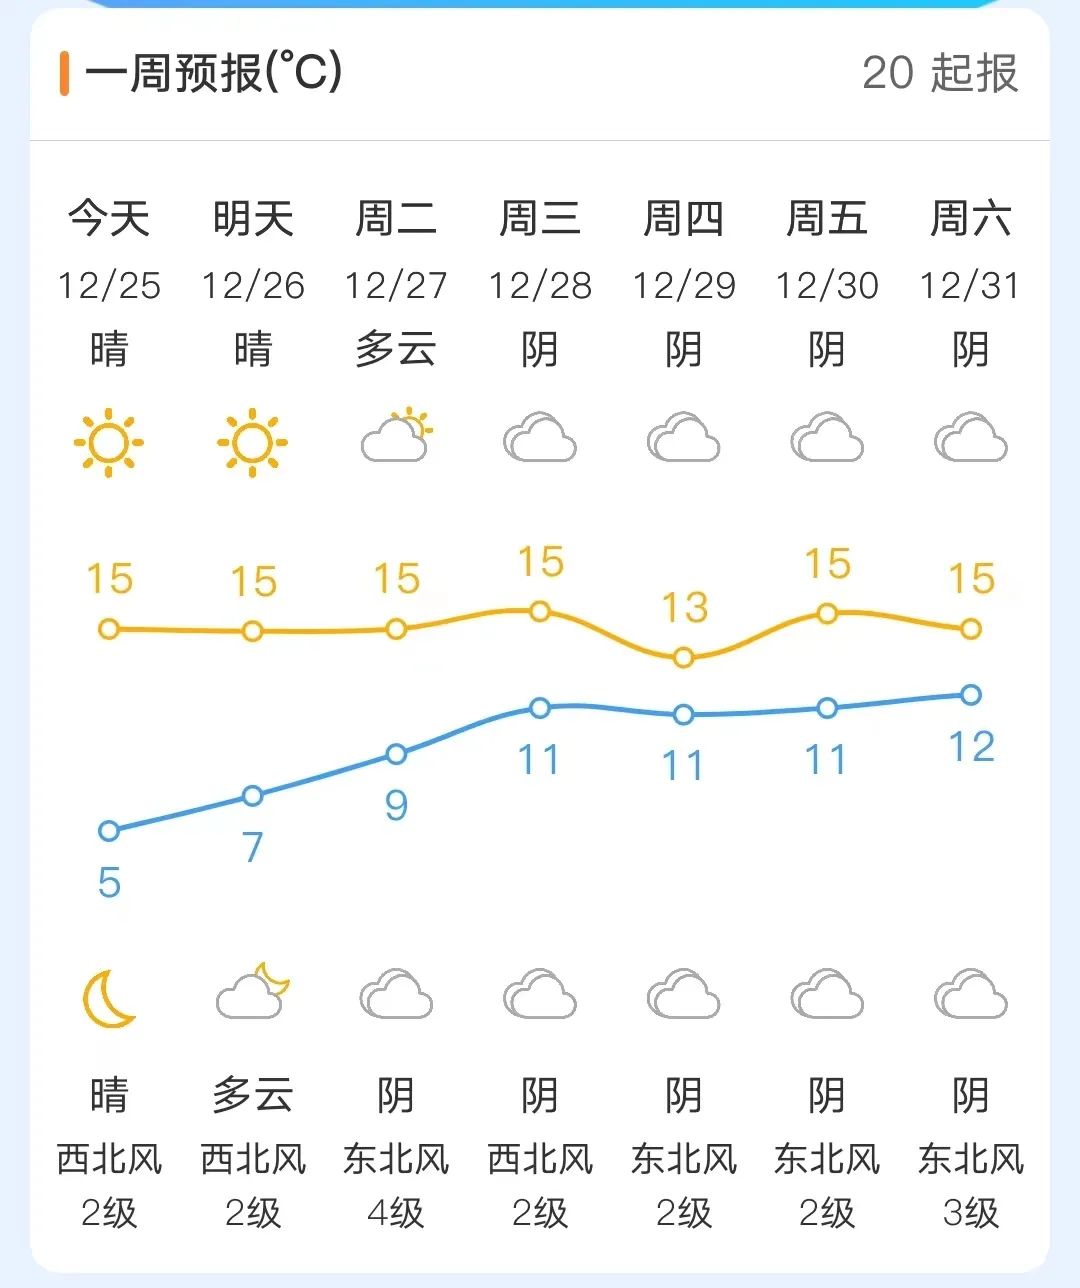 福州气温开启回升模式 天气依旧干燥